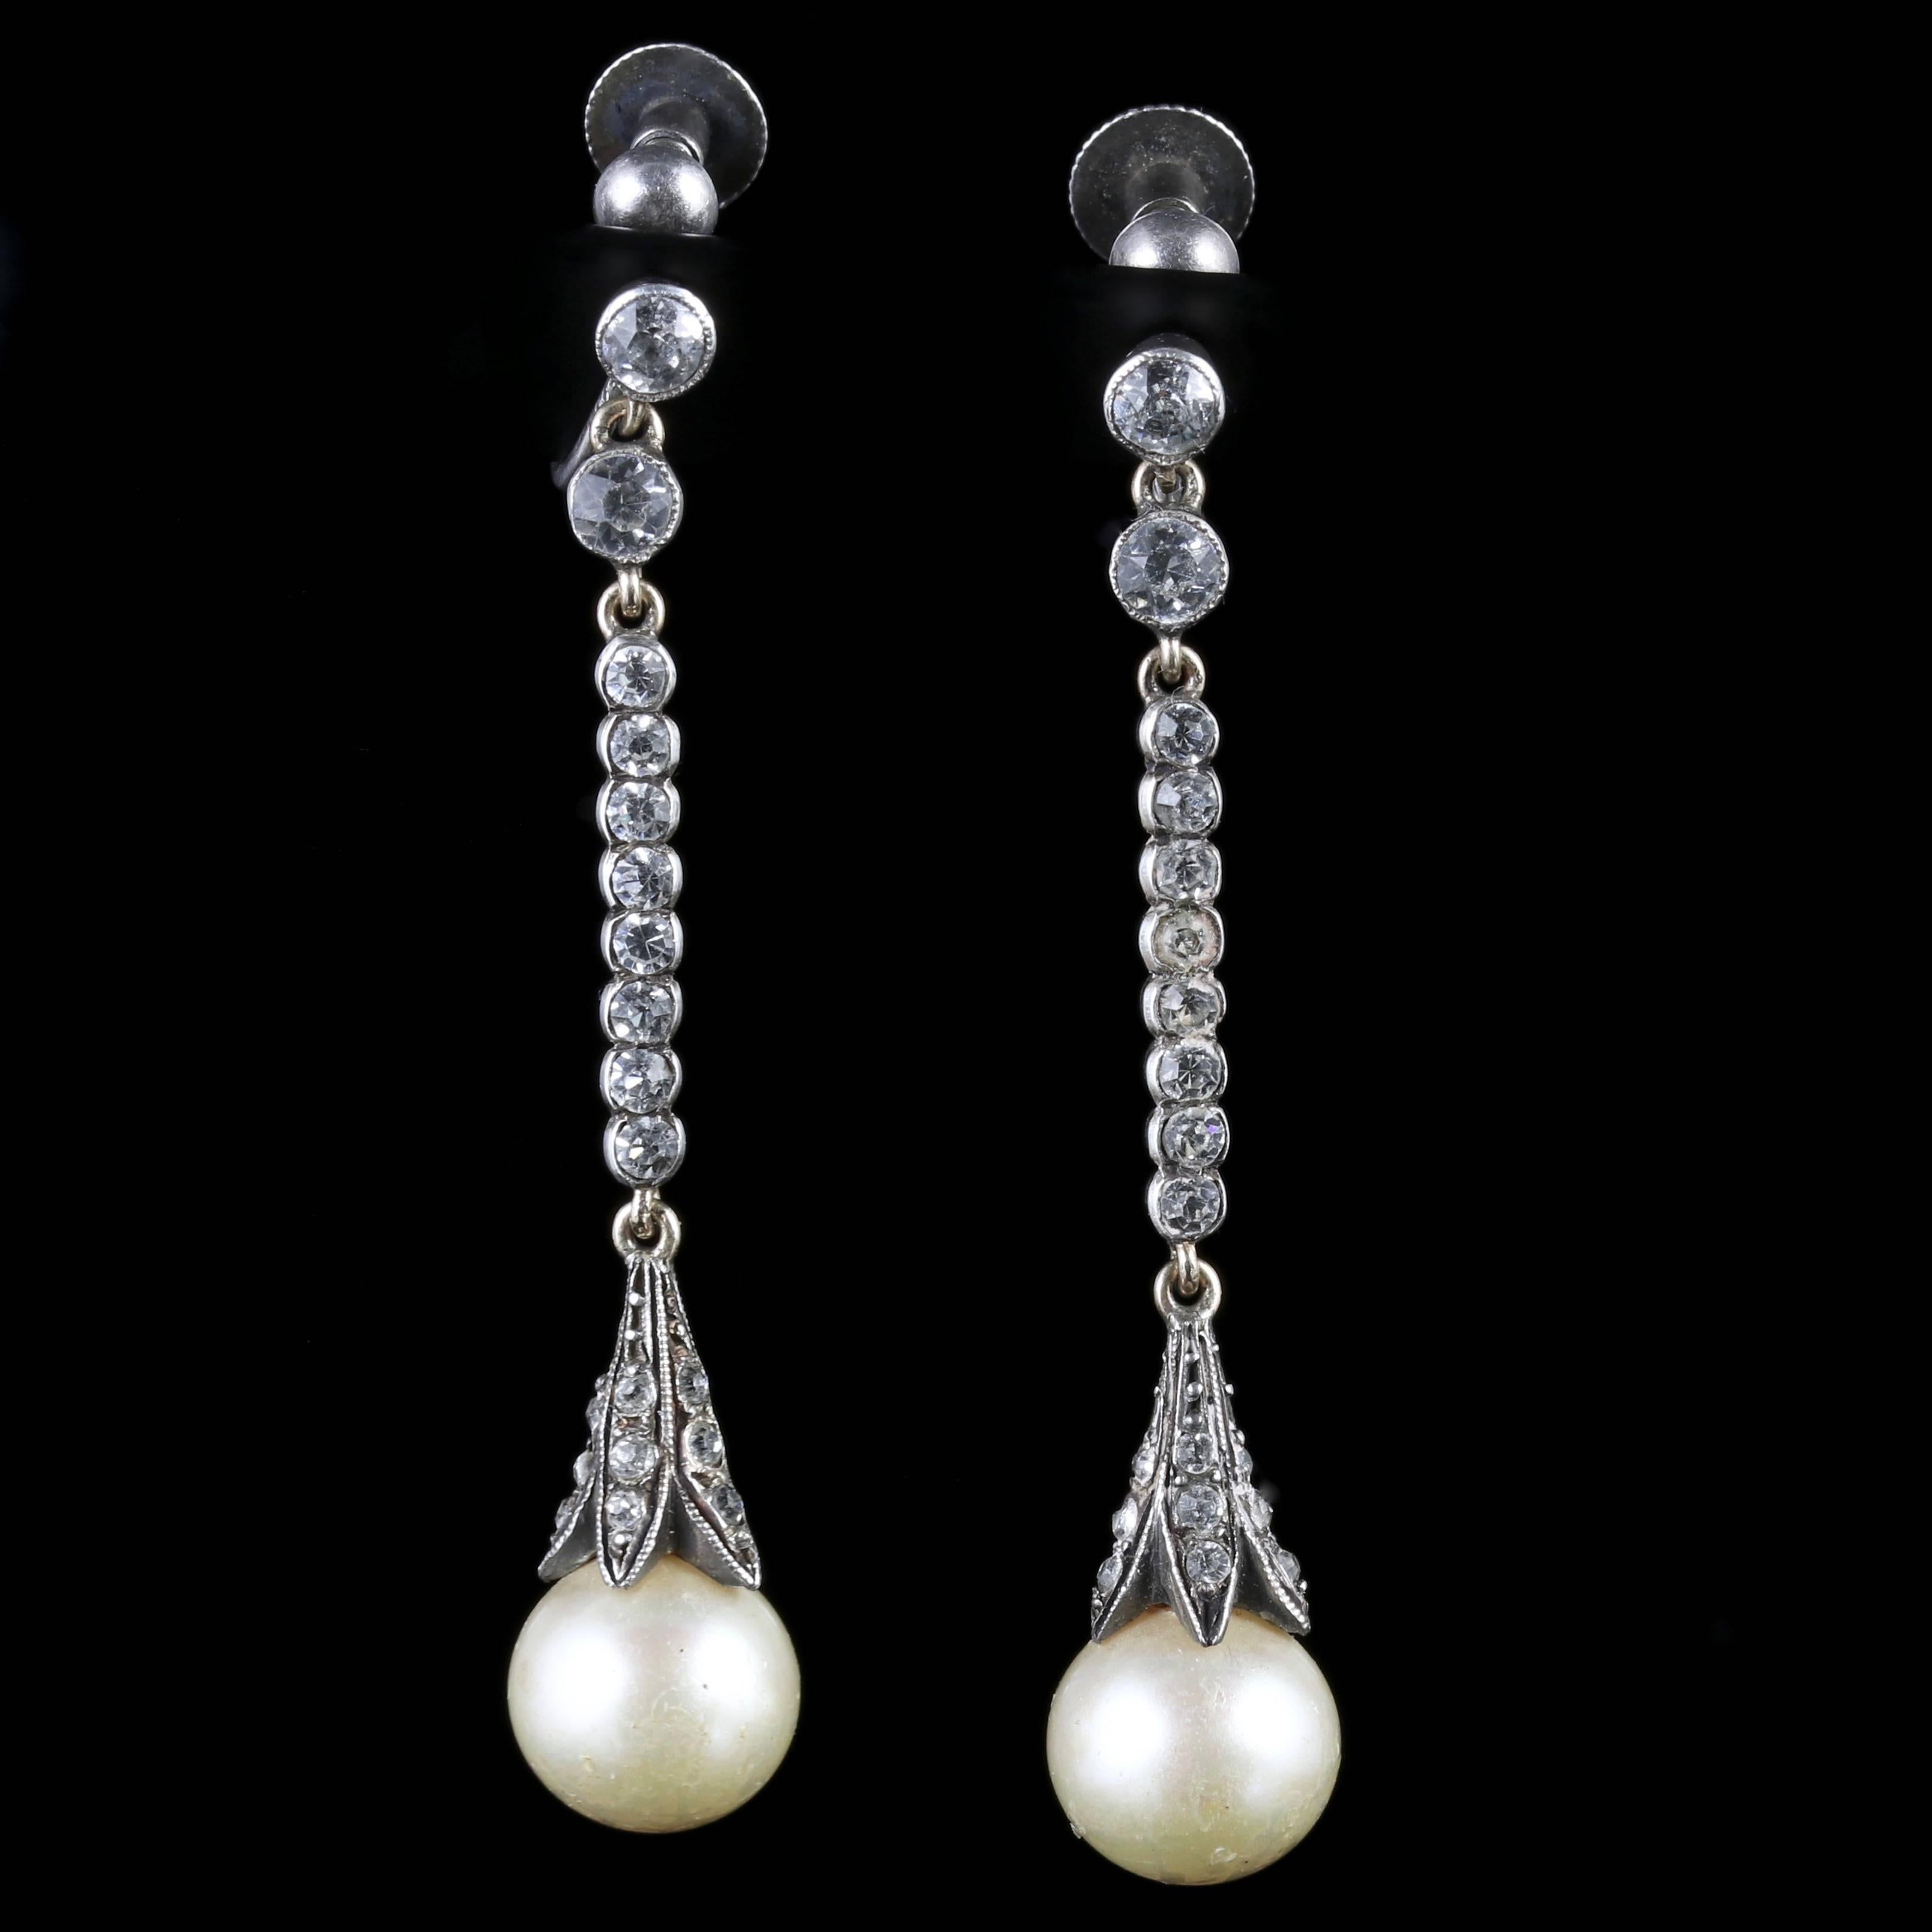 Antique Edwardian Long Sterling Silver Paste Pearl Earrings 4